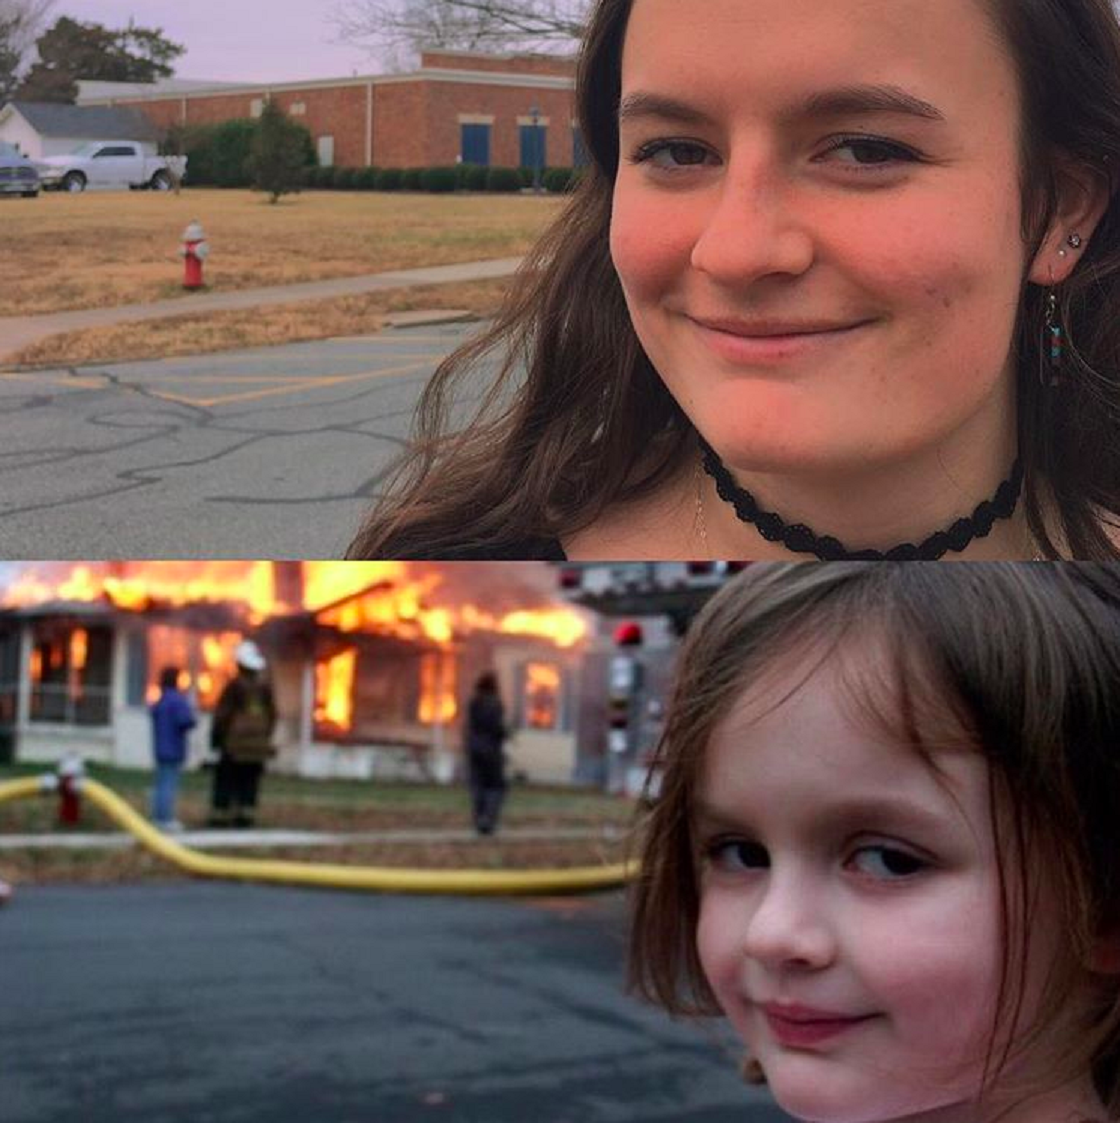 Disaster Girl – El meme de la niña que sonríe frente a un incendio